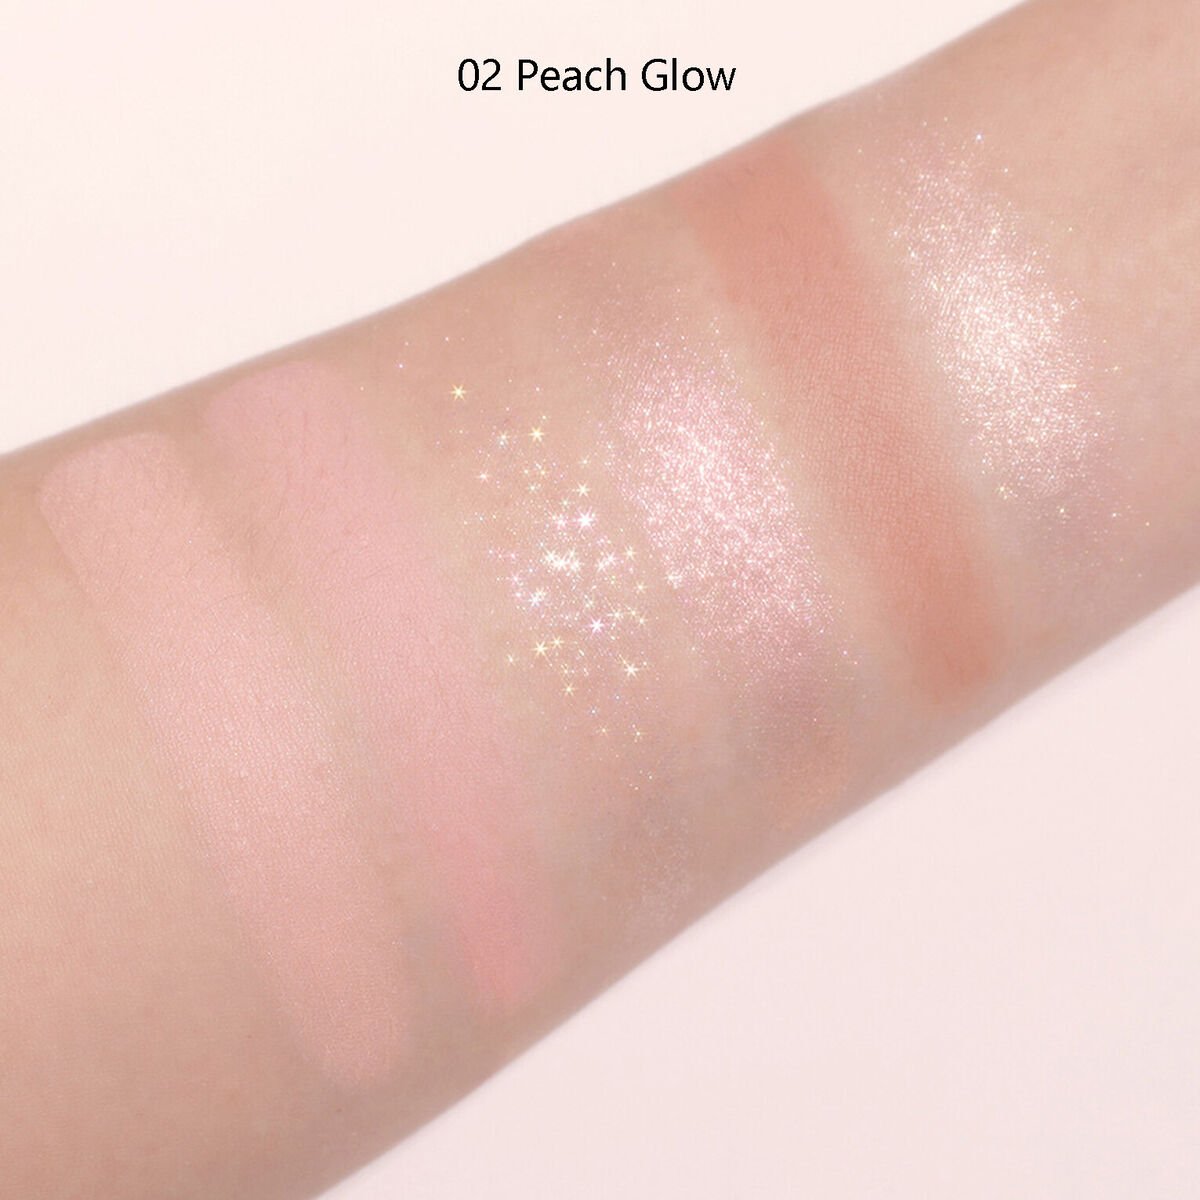 Revitalisez votre peau grâce à AMUSE Vegan ALL Face Palette 02 Peach Glow